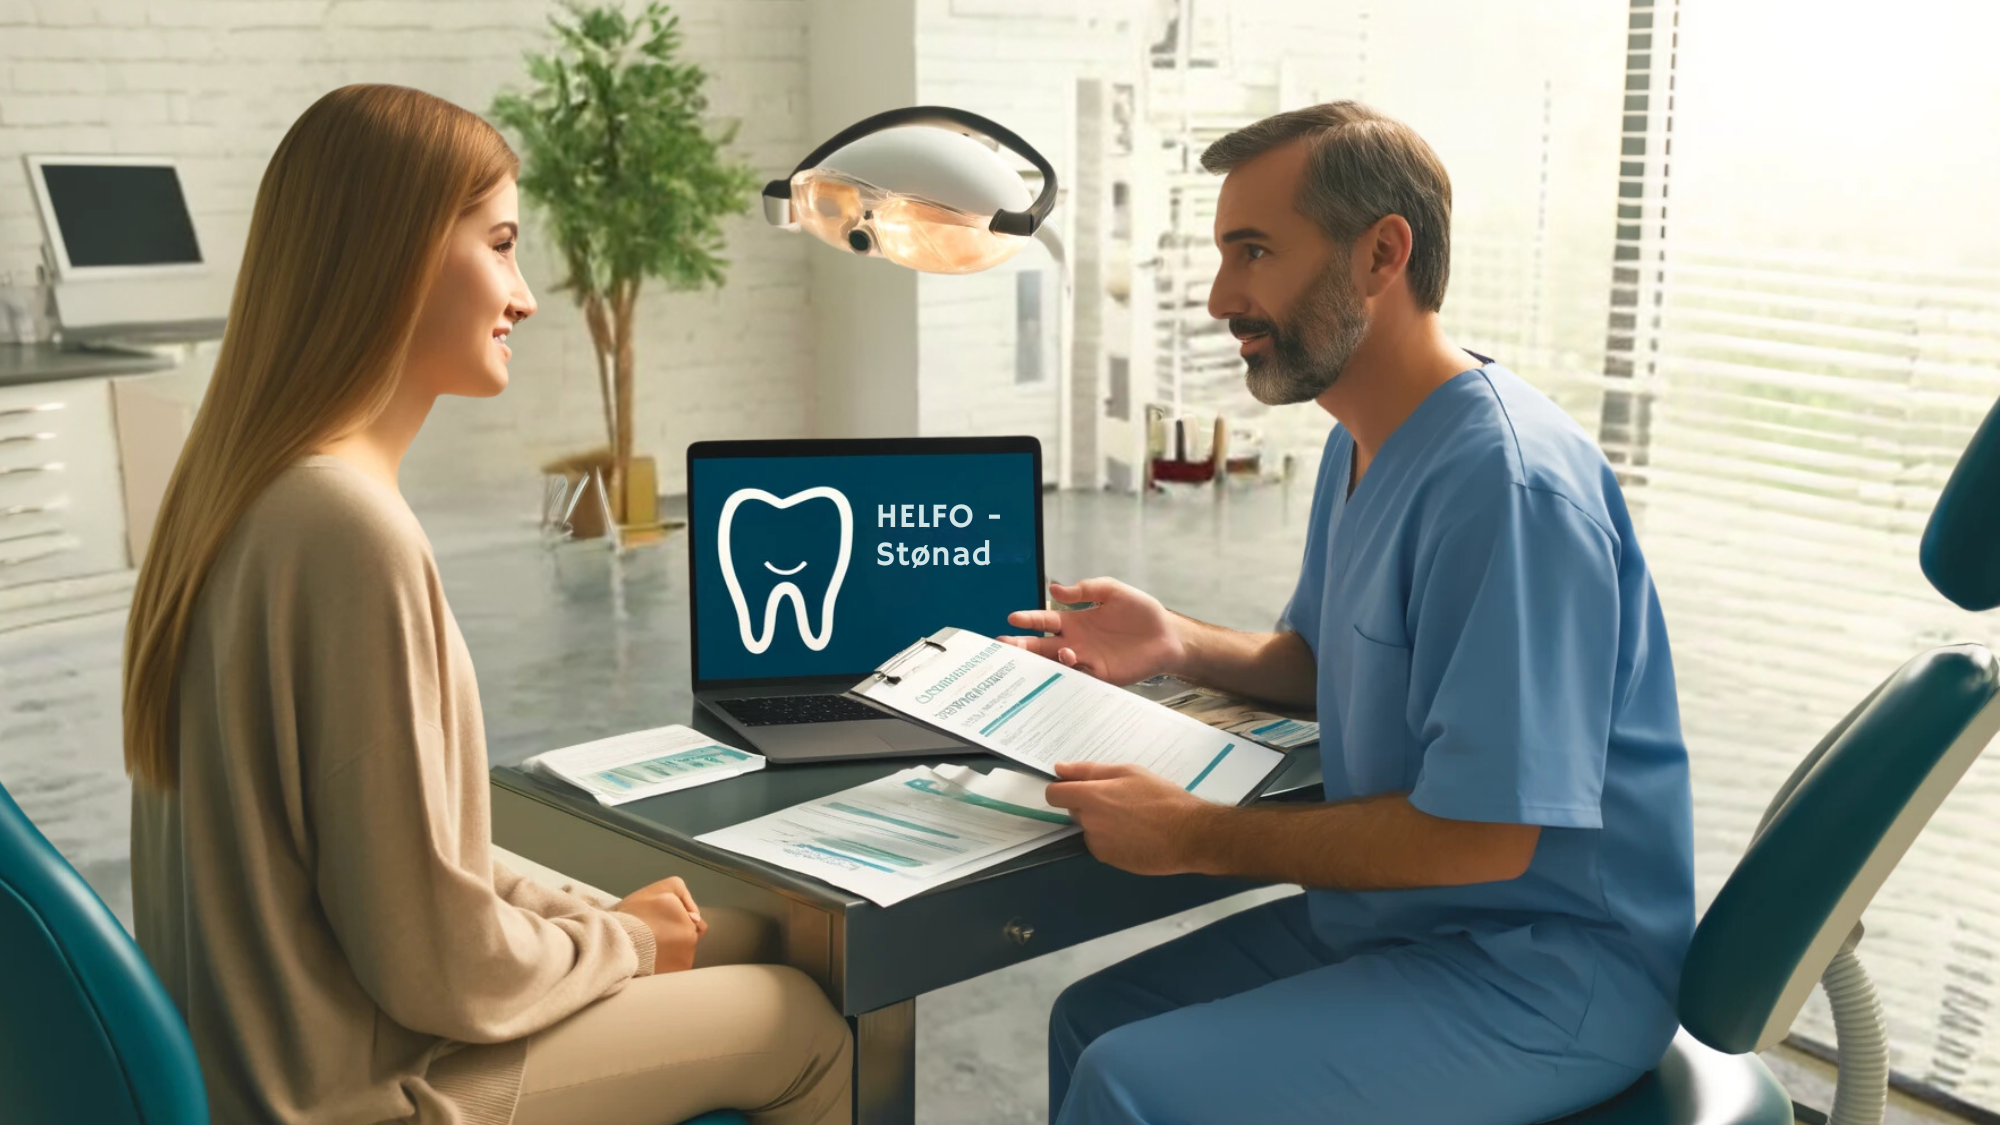 En pasient konsulterer med en tannlege med bærbar PC og dokumenter på bordet i en lys klinikk